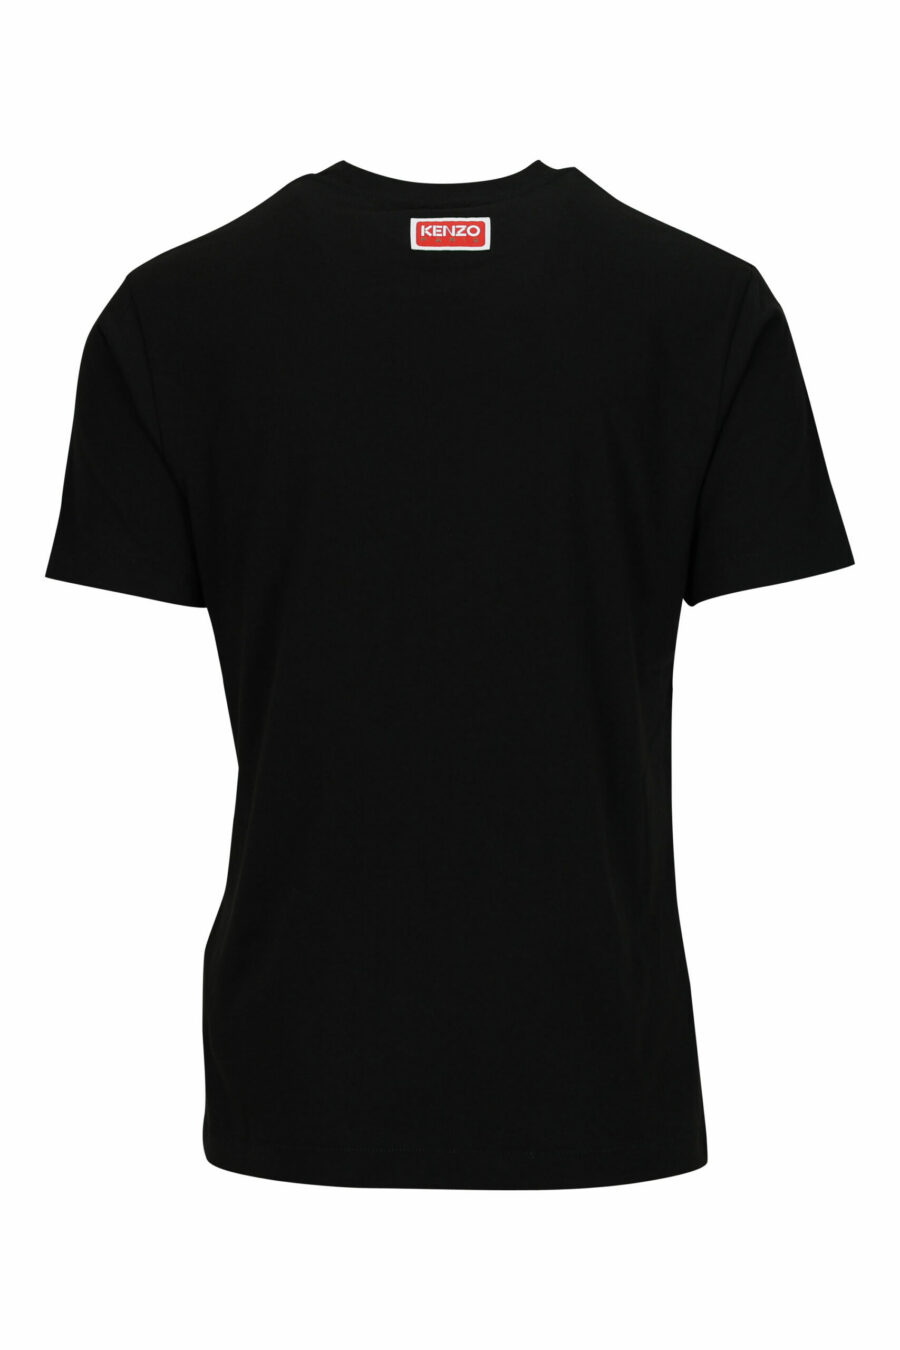 T-shirt noir oversize avec petit logo tigré en relief - 3612230571686 1 scaled